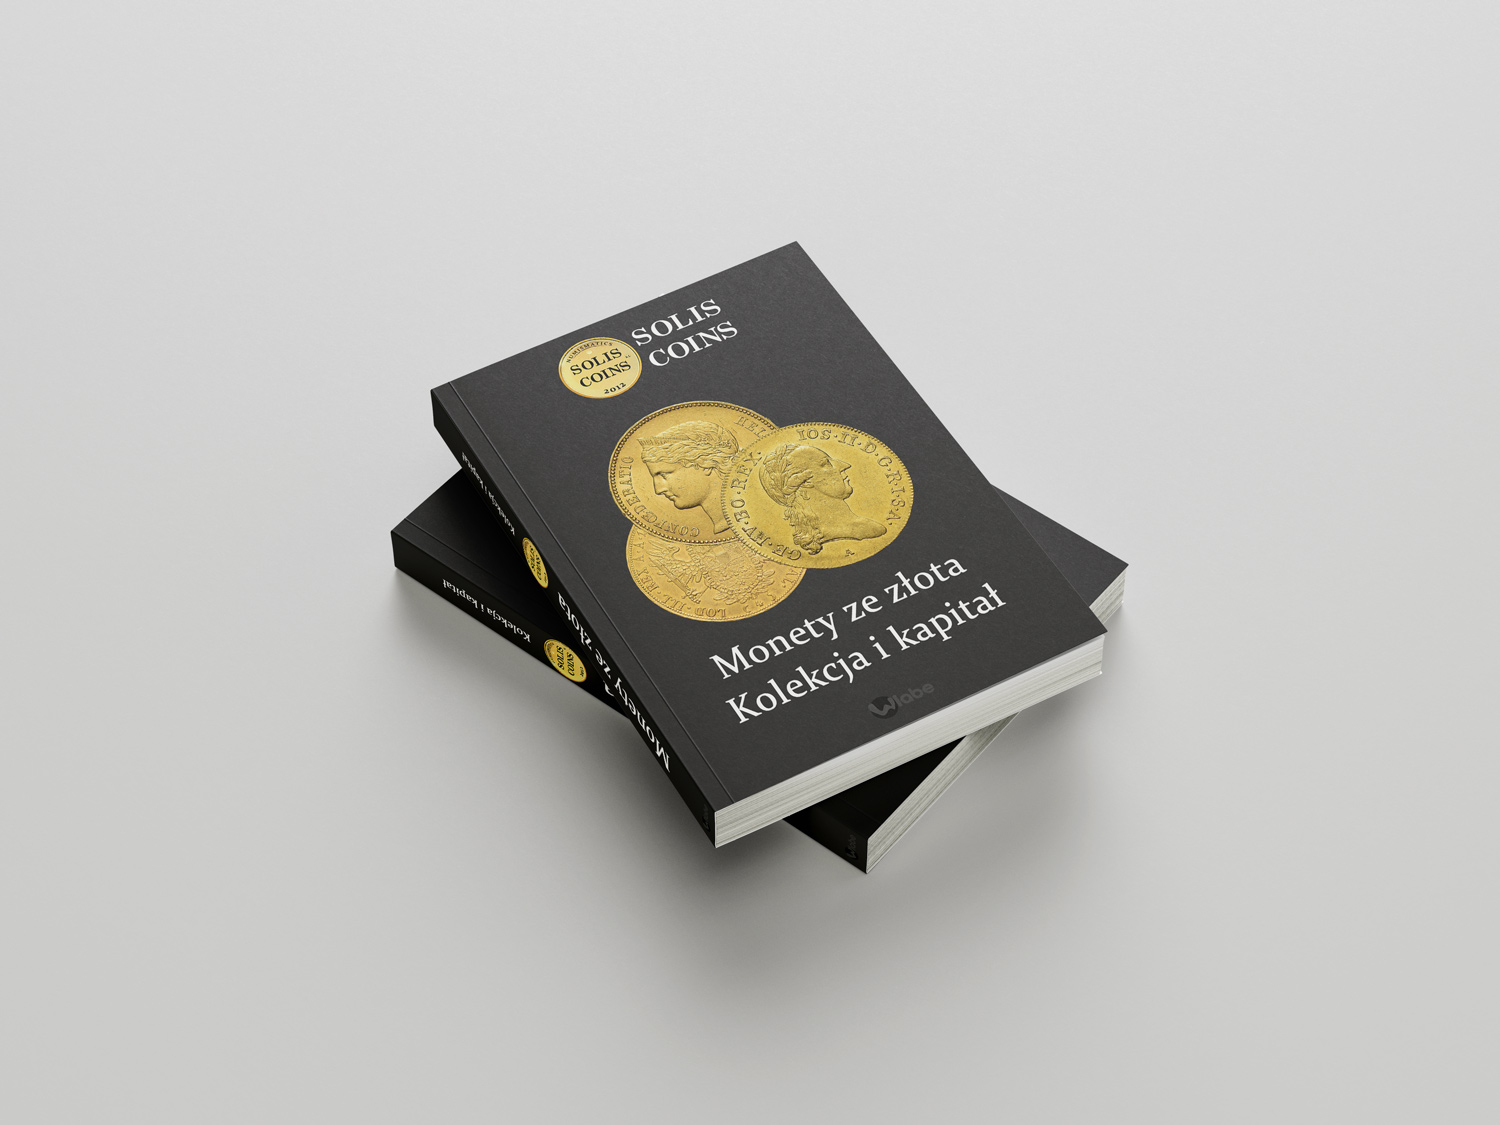 Soliscoins book monety ze zlota kolekcja i kapital